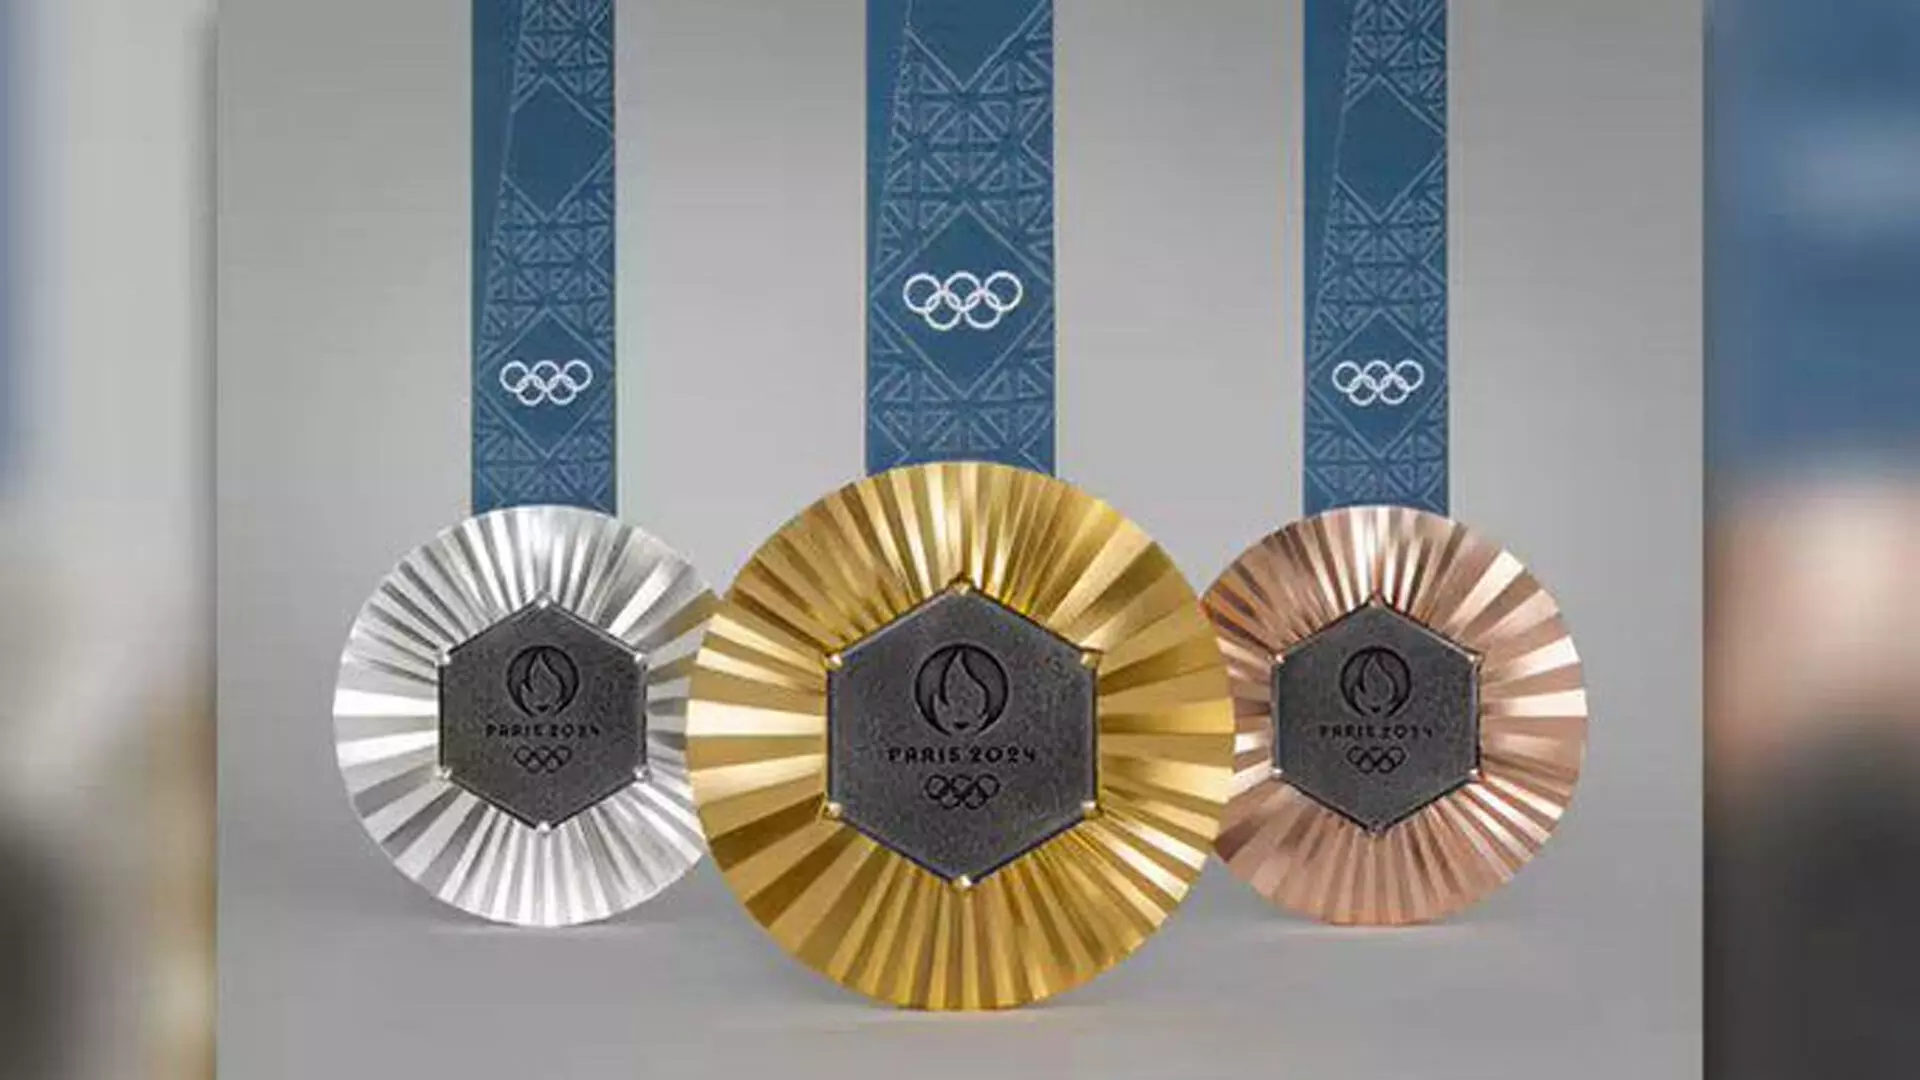 Paris Olympics 2024 के पदकों में एफिल टॉवर का लोहे का टुकड़ा होगा